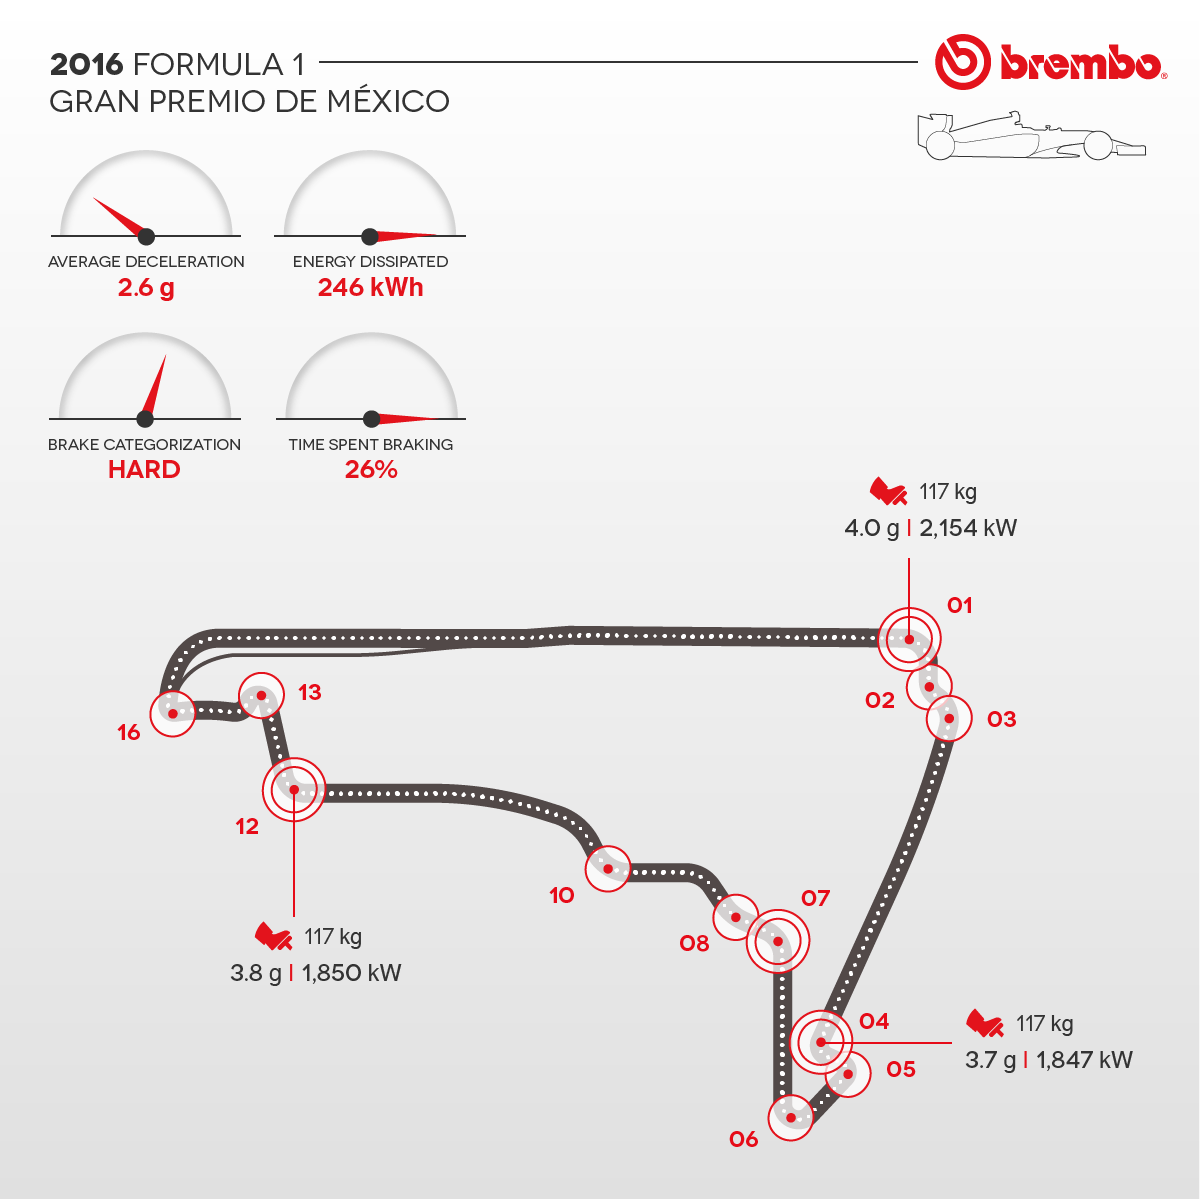 Representación detallada del circuito de México 2016 con curvas detalles Brembo